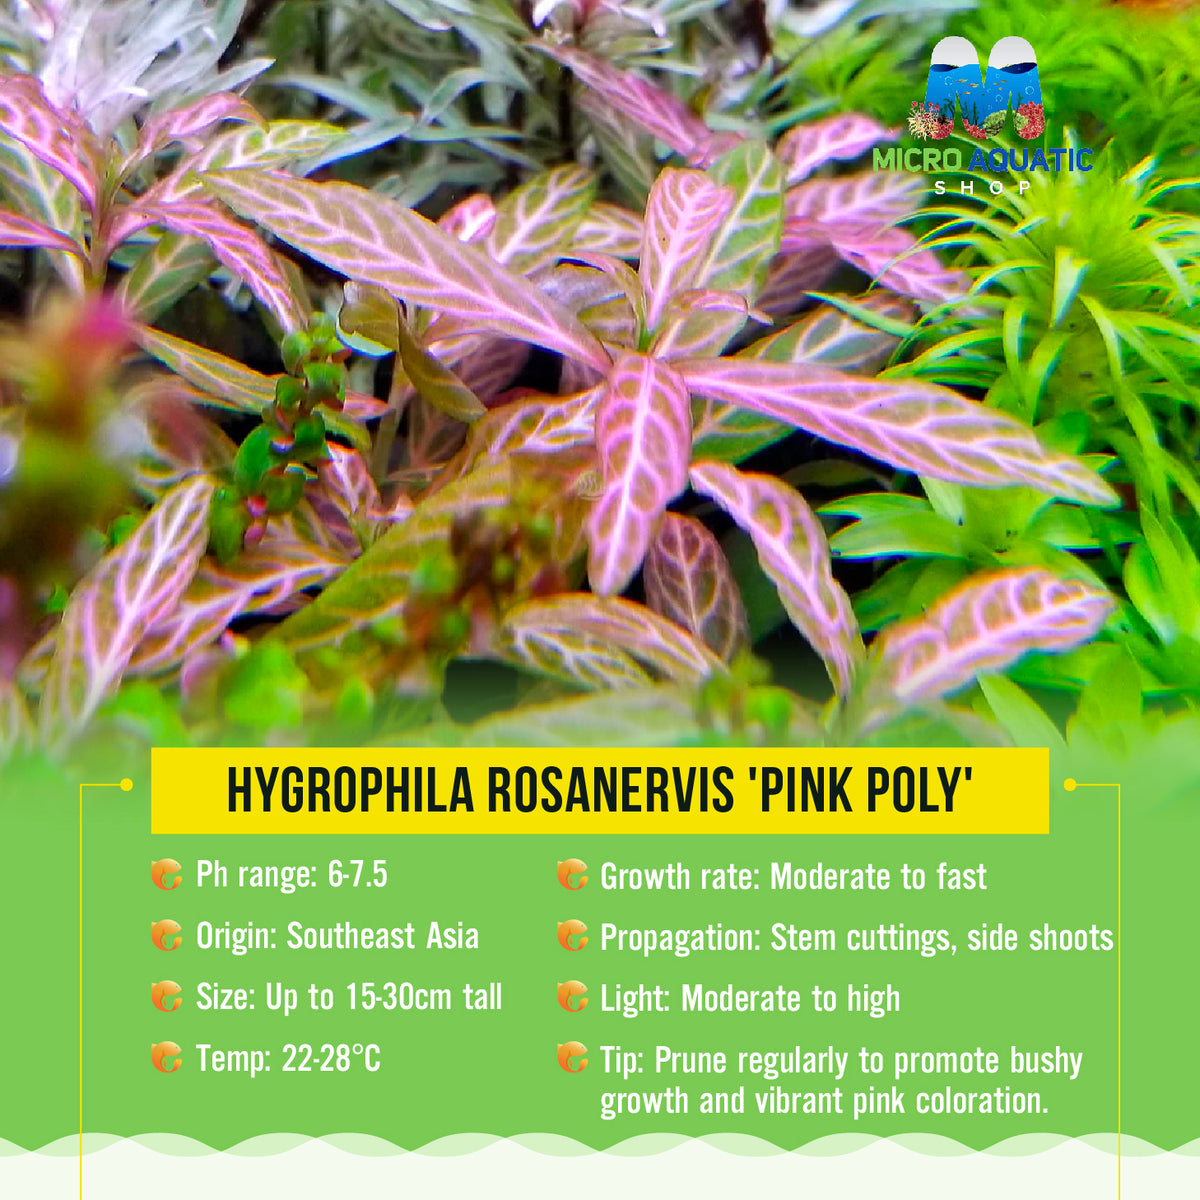 Hygrophila rosanervis 'Pink Poly'